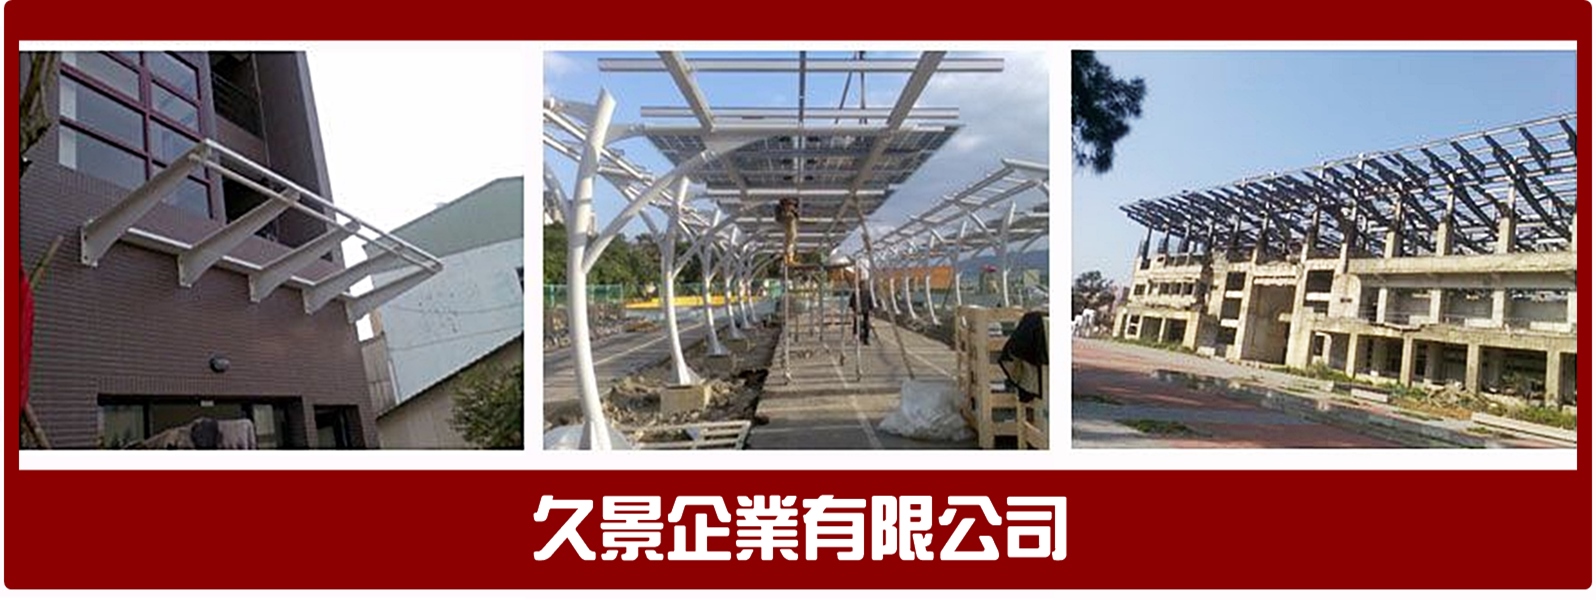 久景企業-專營鋼構鉄皮屋 ◆ H鋼鐵工廠